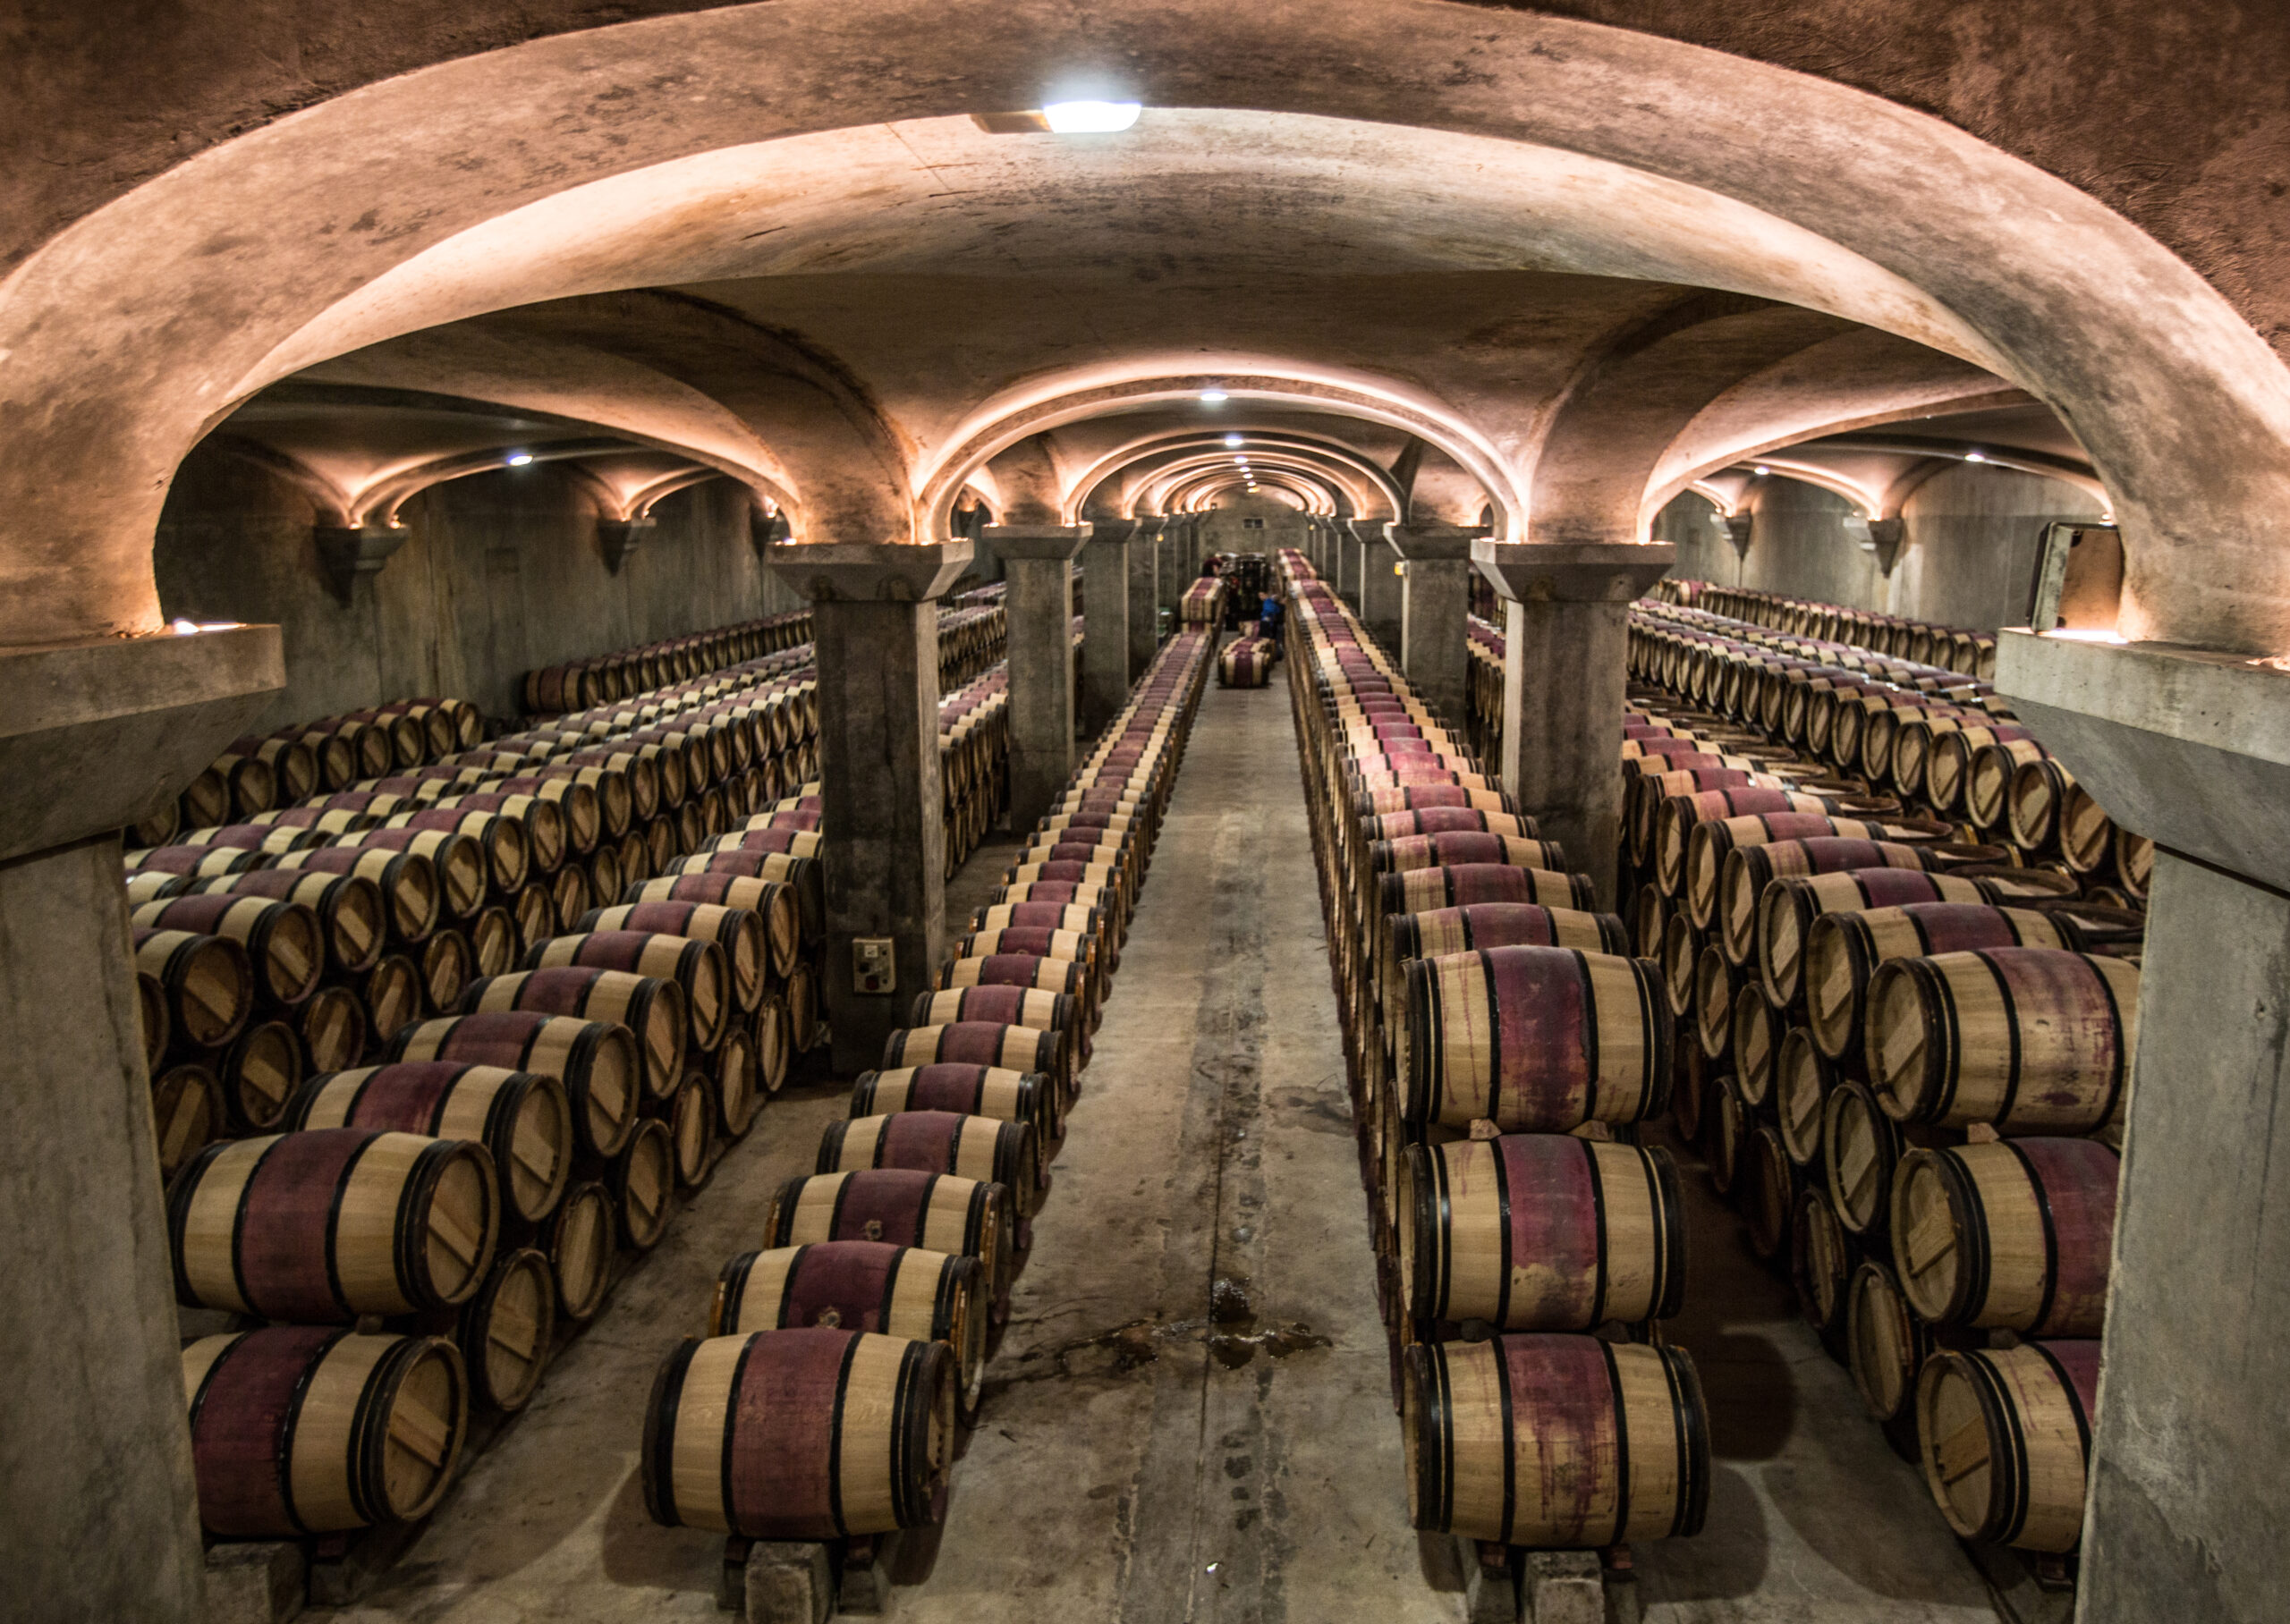 S-a înregistrat o scădere accentuată a producției de vin „de masă”, o tendință legată de politica UE, care favorizează creșterea producției de vinuri de calitate. Sursa foto dreamstime